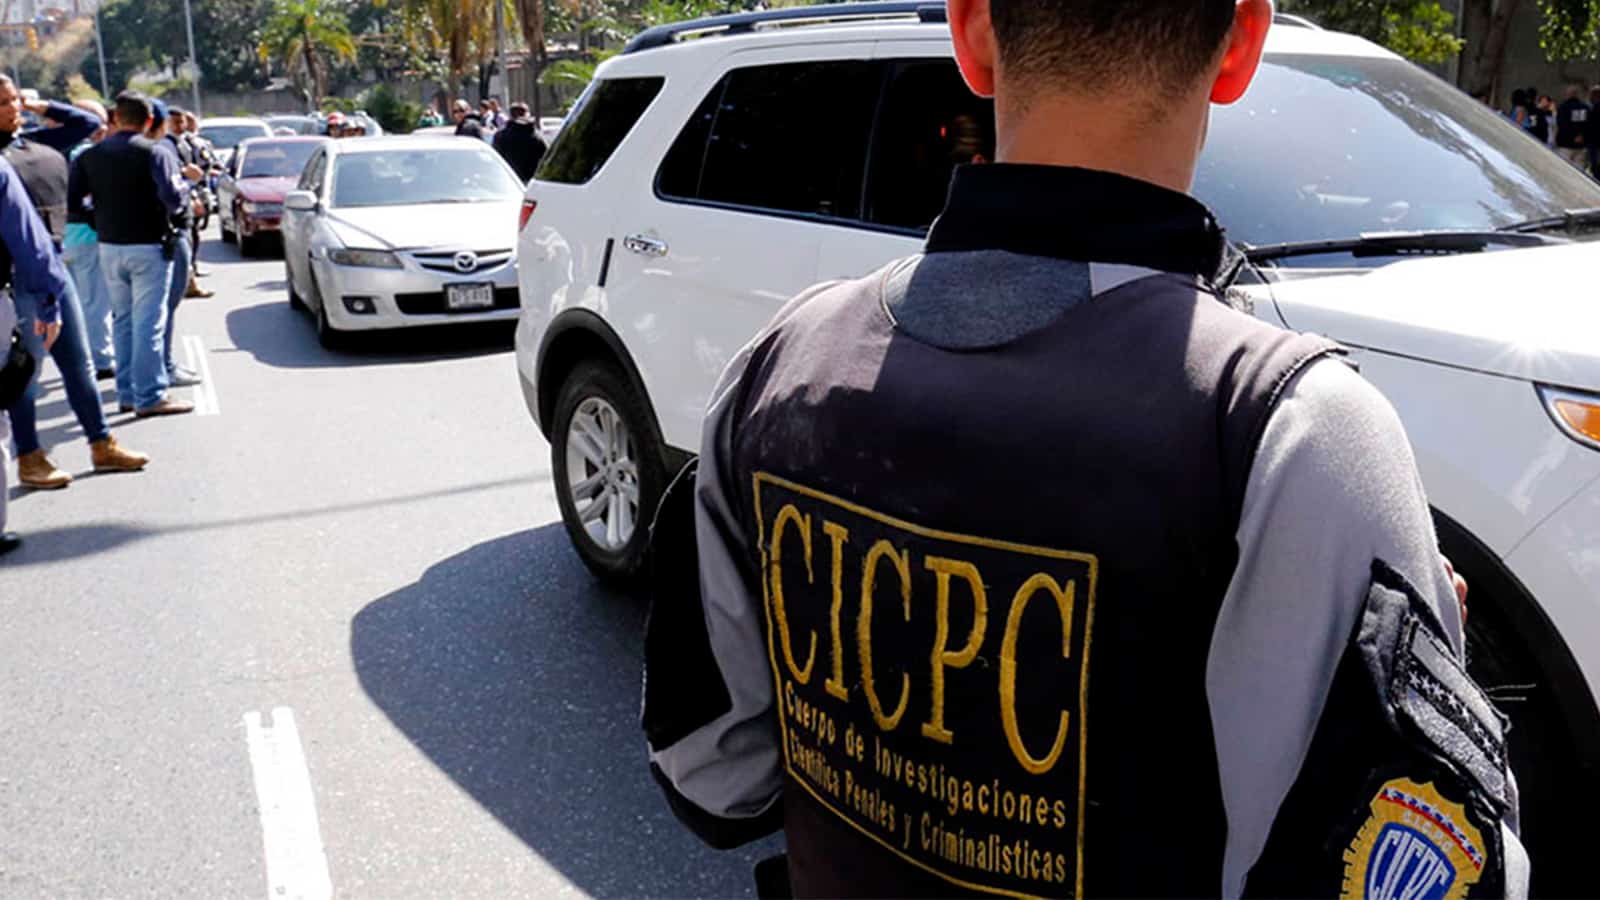 Cicpc esclarece homicidio de un hombre en Antímano